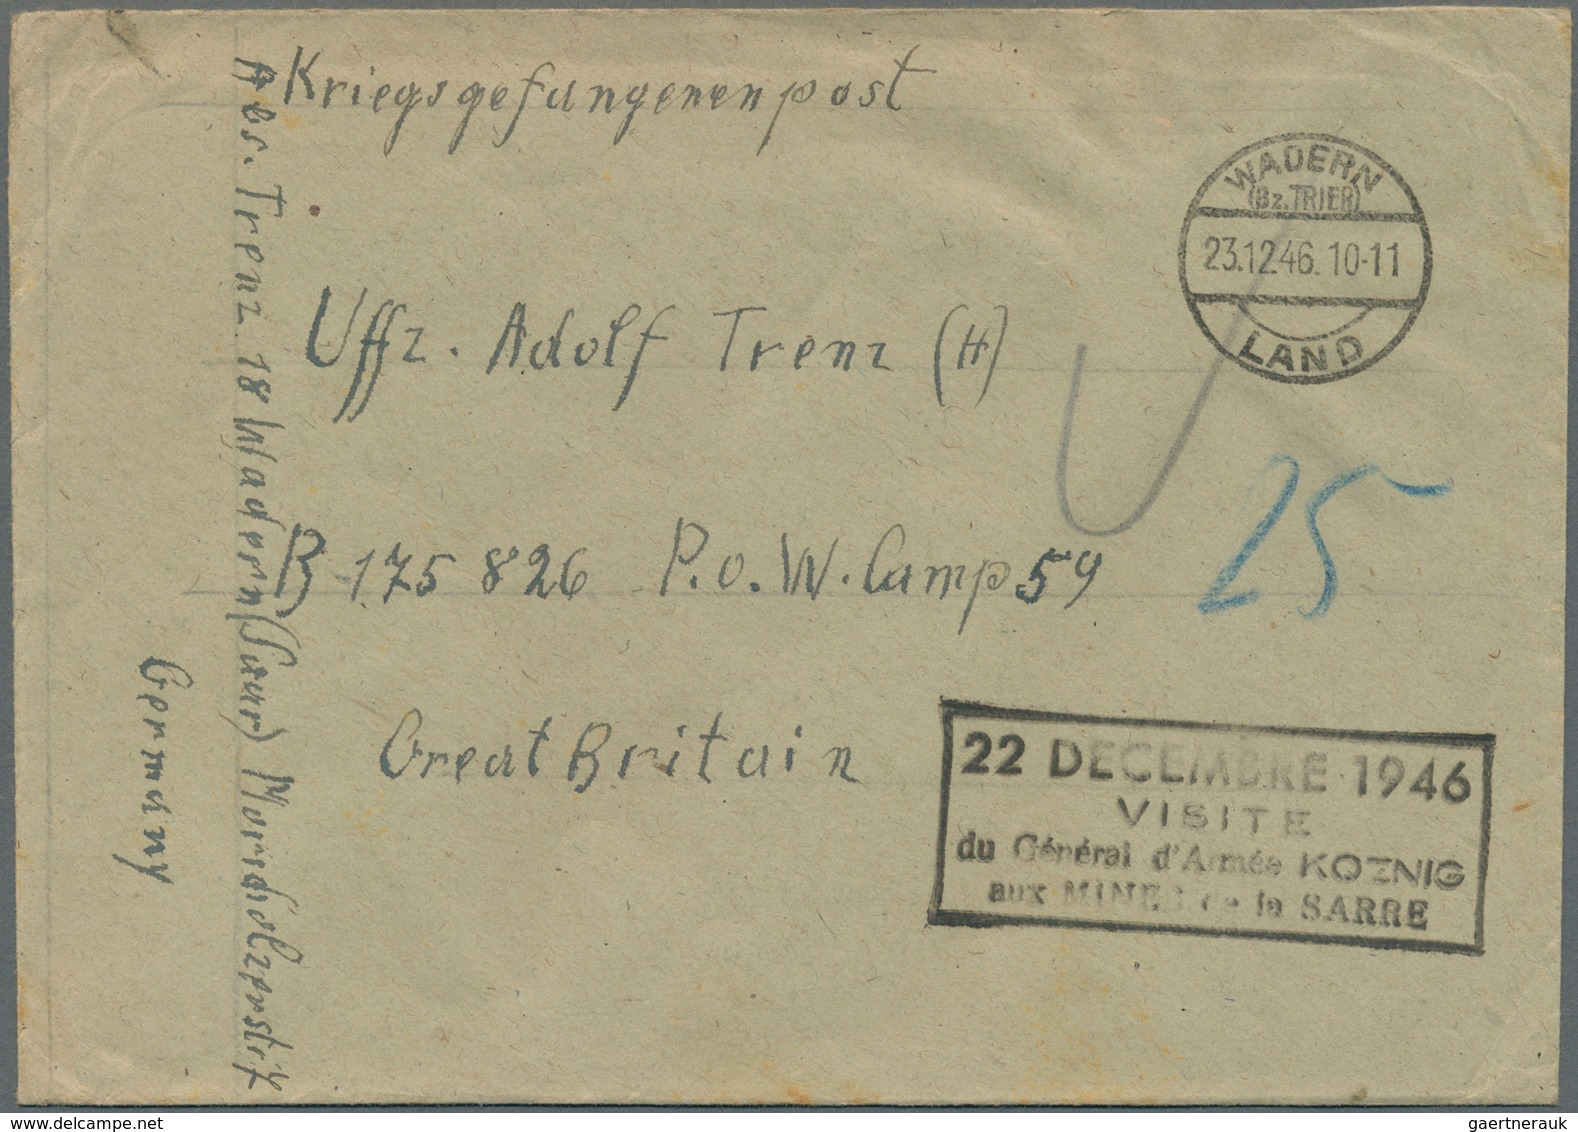 Deutschland: 1941/1973, vielseitige Partie von ca. 290 Briefen und Karten, unberührt aus Sammler-Kor